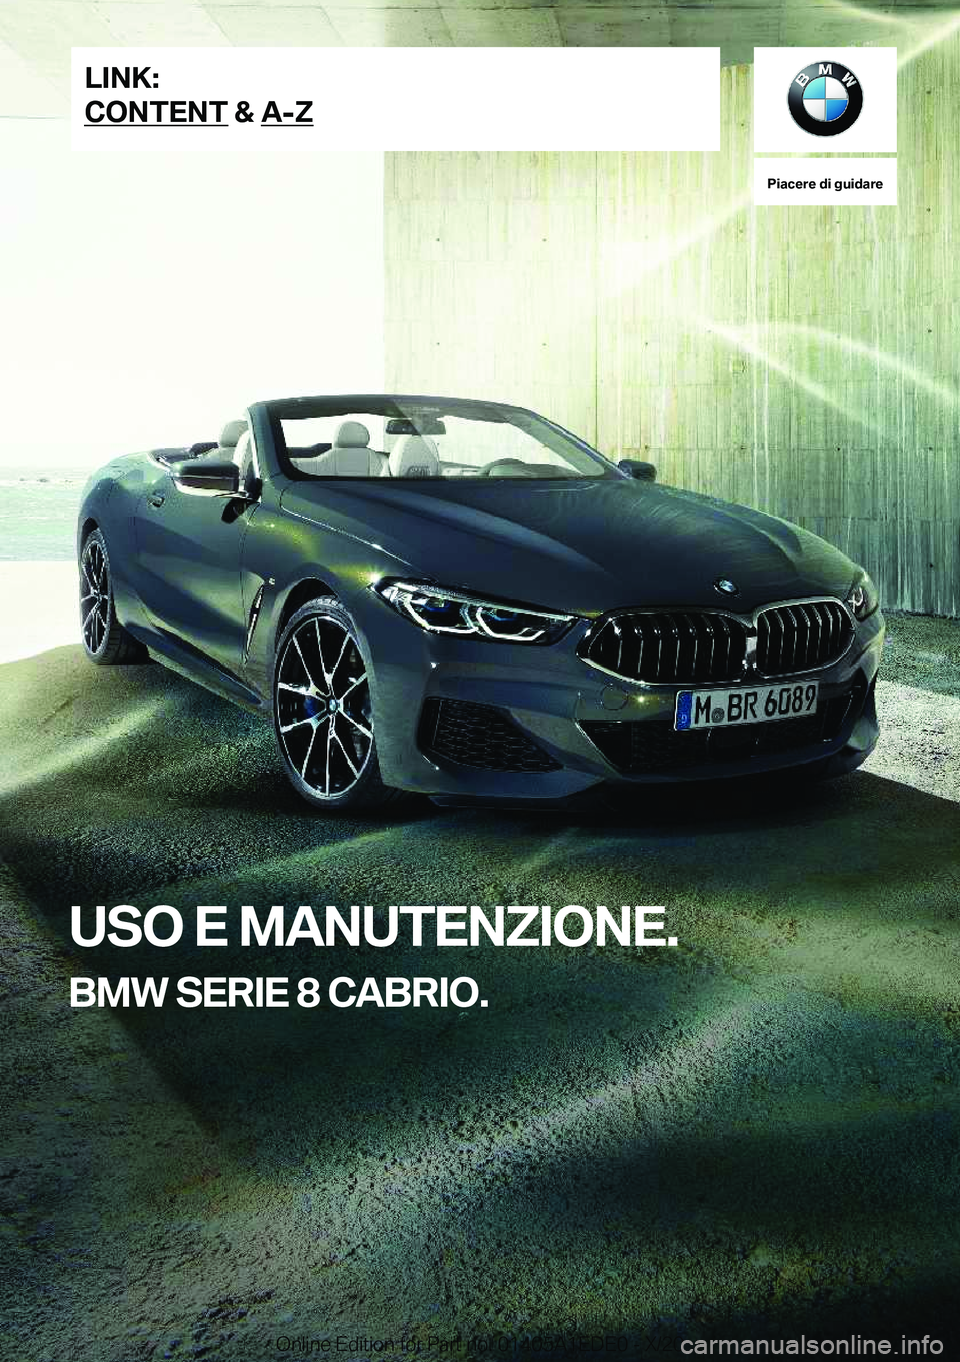 BMW 8 SERIES CONVERTIBLE 2021  Libretti Di Uso E manutenzione (in Italian) �P�i�a�c�e�r�e��d�i��g�u�i�d�a�r�e
�U�S�O��E��M�A�N�U�T�E�N�Z�I�O�N�E�.
�B�M�W��S�E�R�I�E��8��C�A�B�R�I�O�.�L�I�N�K�:
�C�O�N�T�E�N�T��&��A�-�Z�O�n�l�i�n�e��E�d�i�t�i�o�n��f�o�r��P�a�r�t��